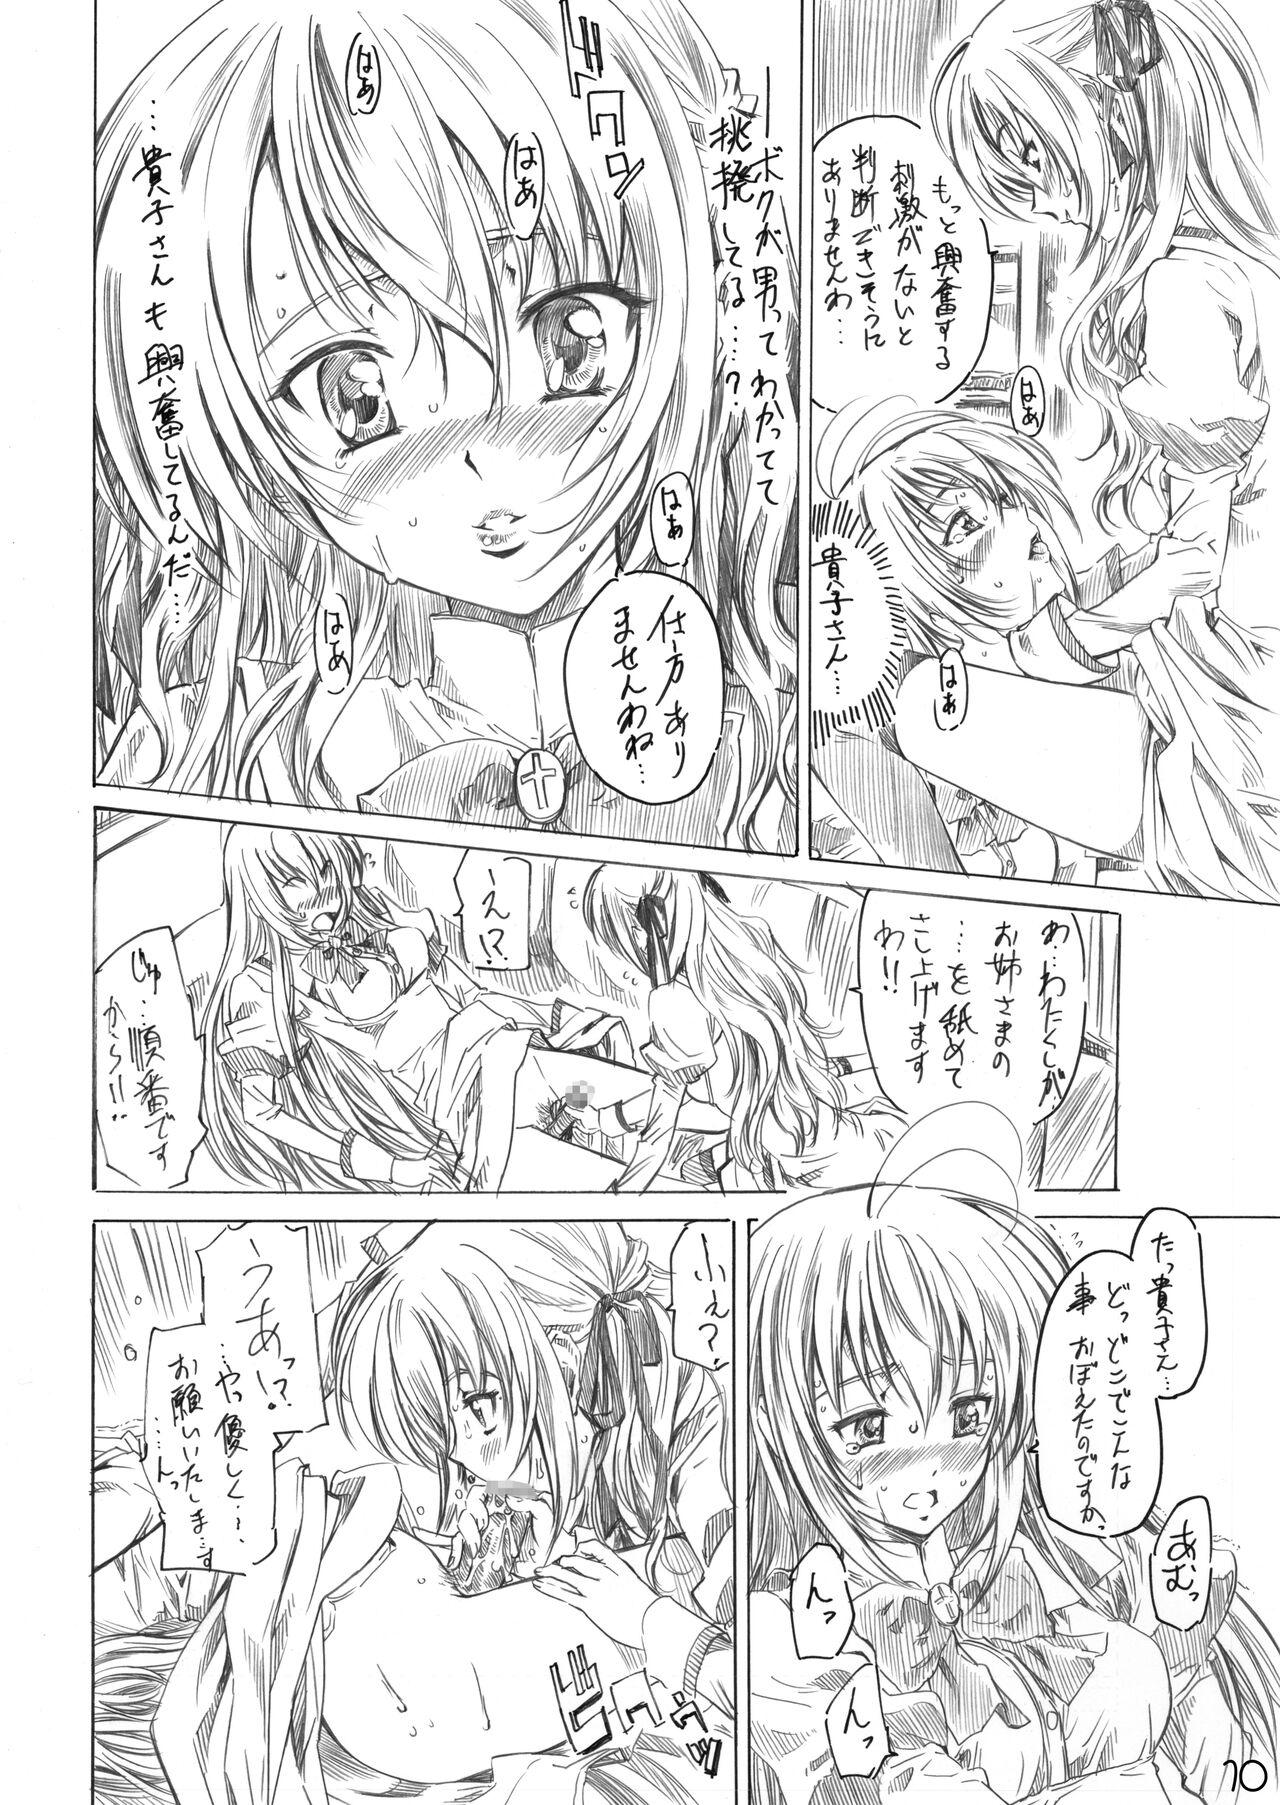 Licking Otome wa Boku de Nani Shiteru - Otome wa boku ni koishiteru Arabic - Page 8